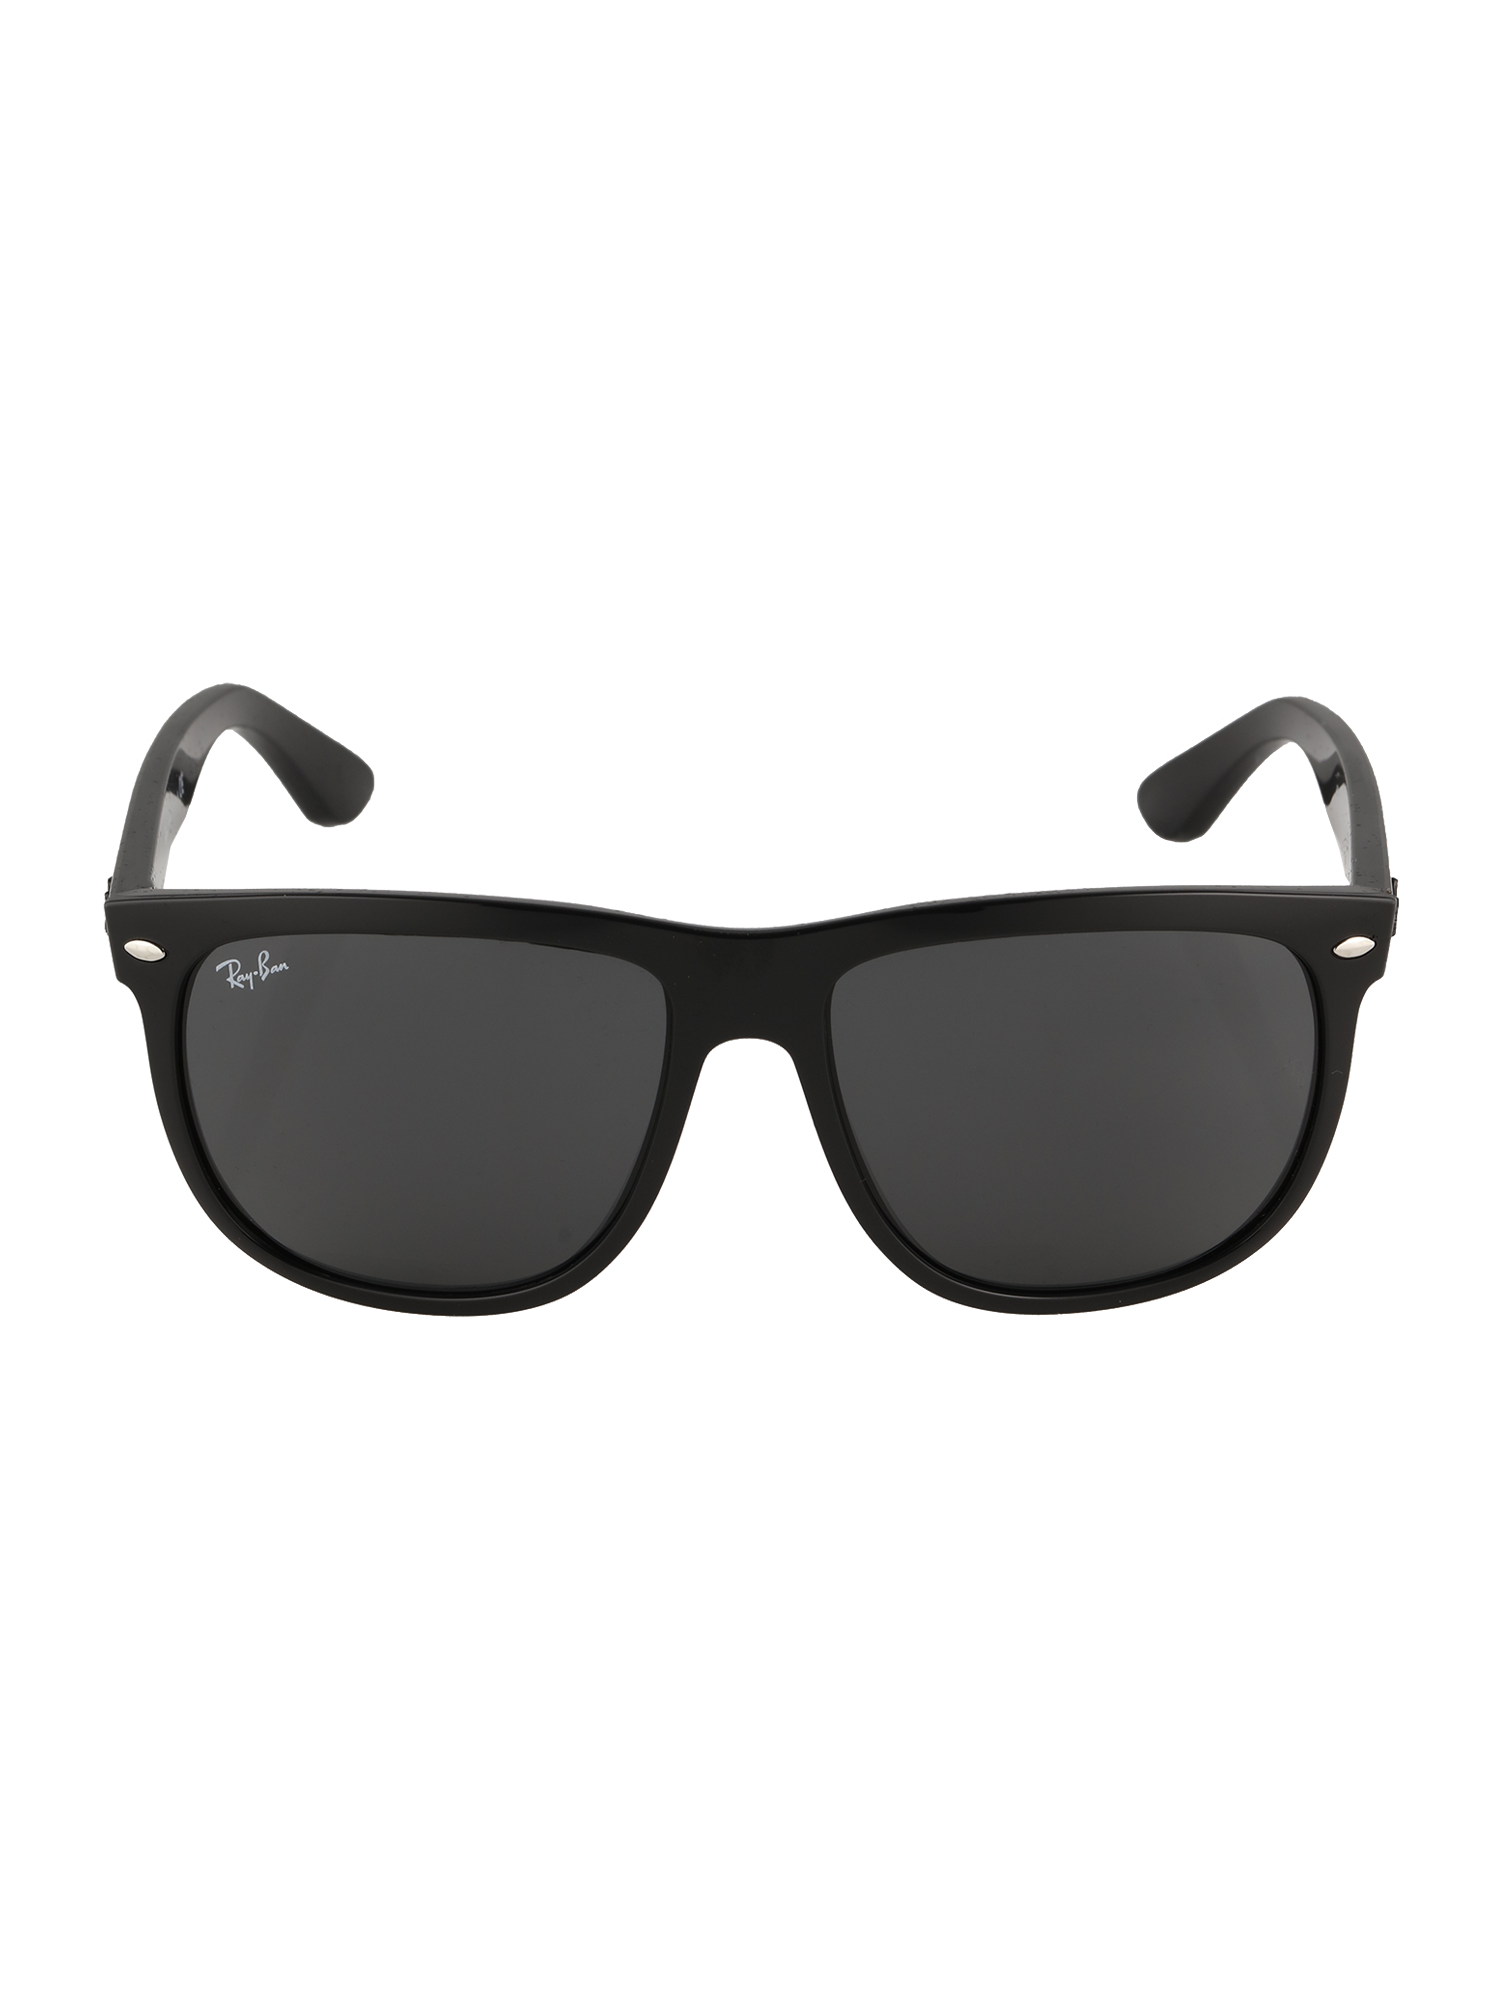 Ray-Ban Okulary przeciwsłoneczne BOYFRIEND w kolorze Czarnym 